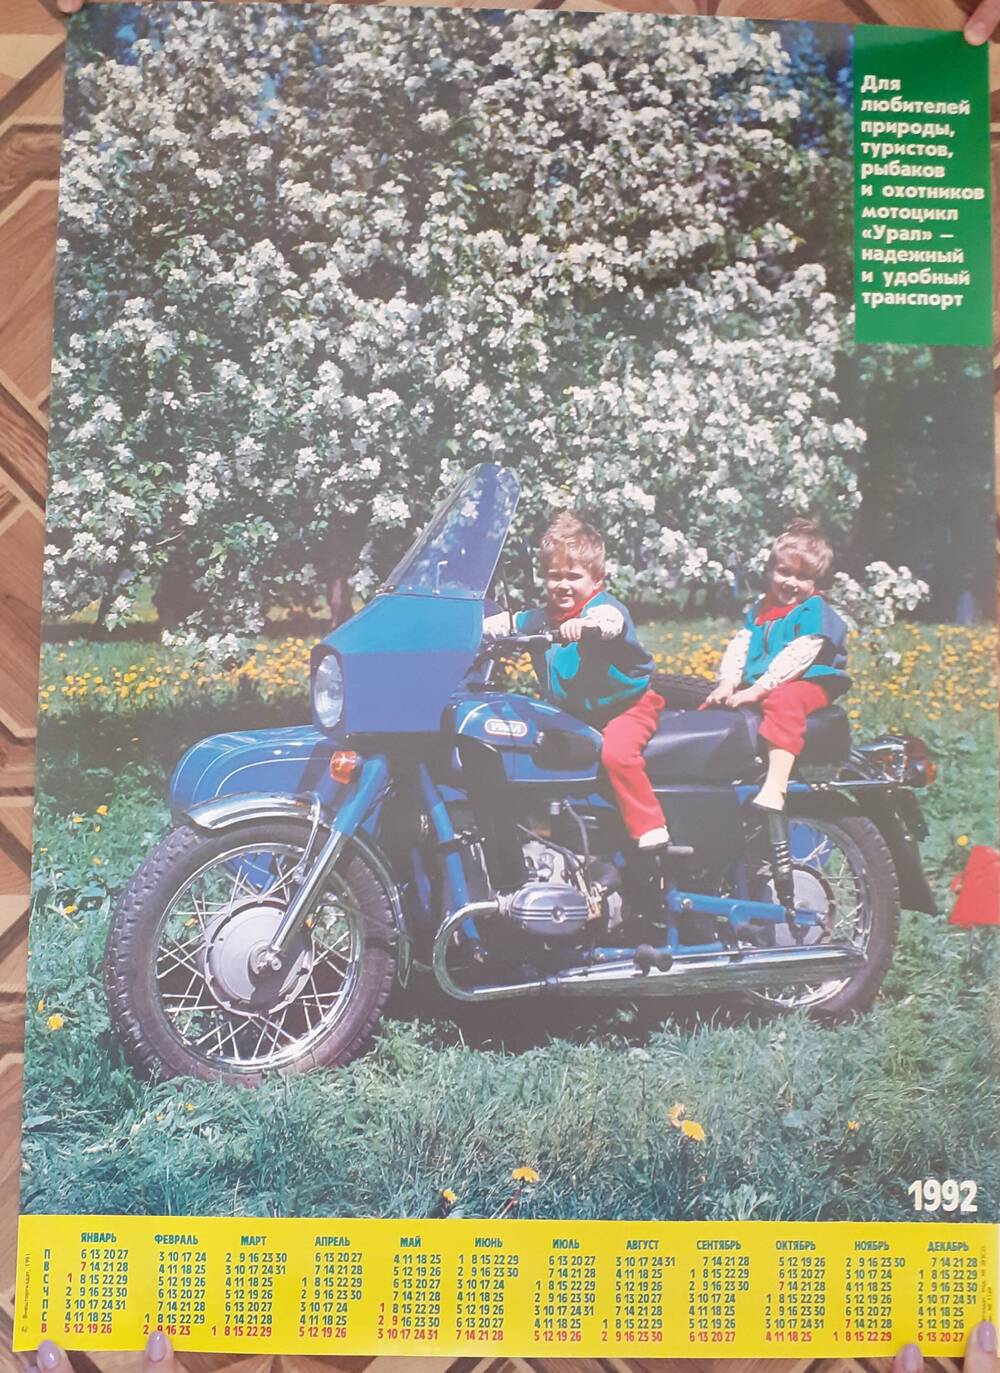 Календарь на 1992 год с изображением продукции Ирбитского Мотоциклетного Завода